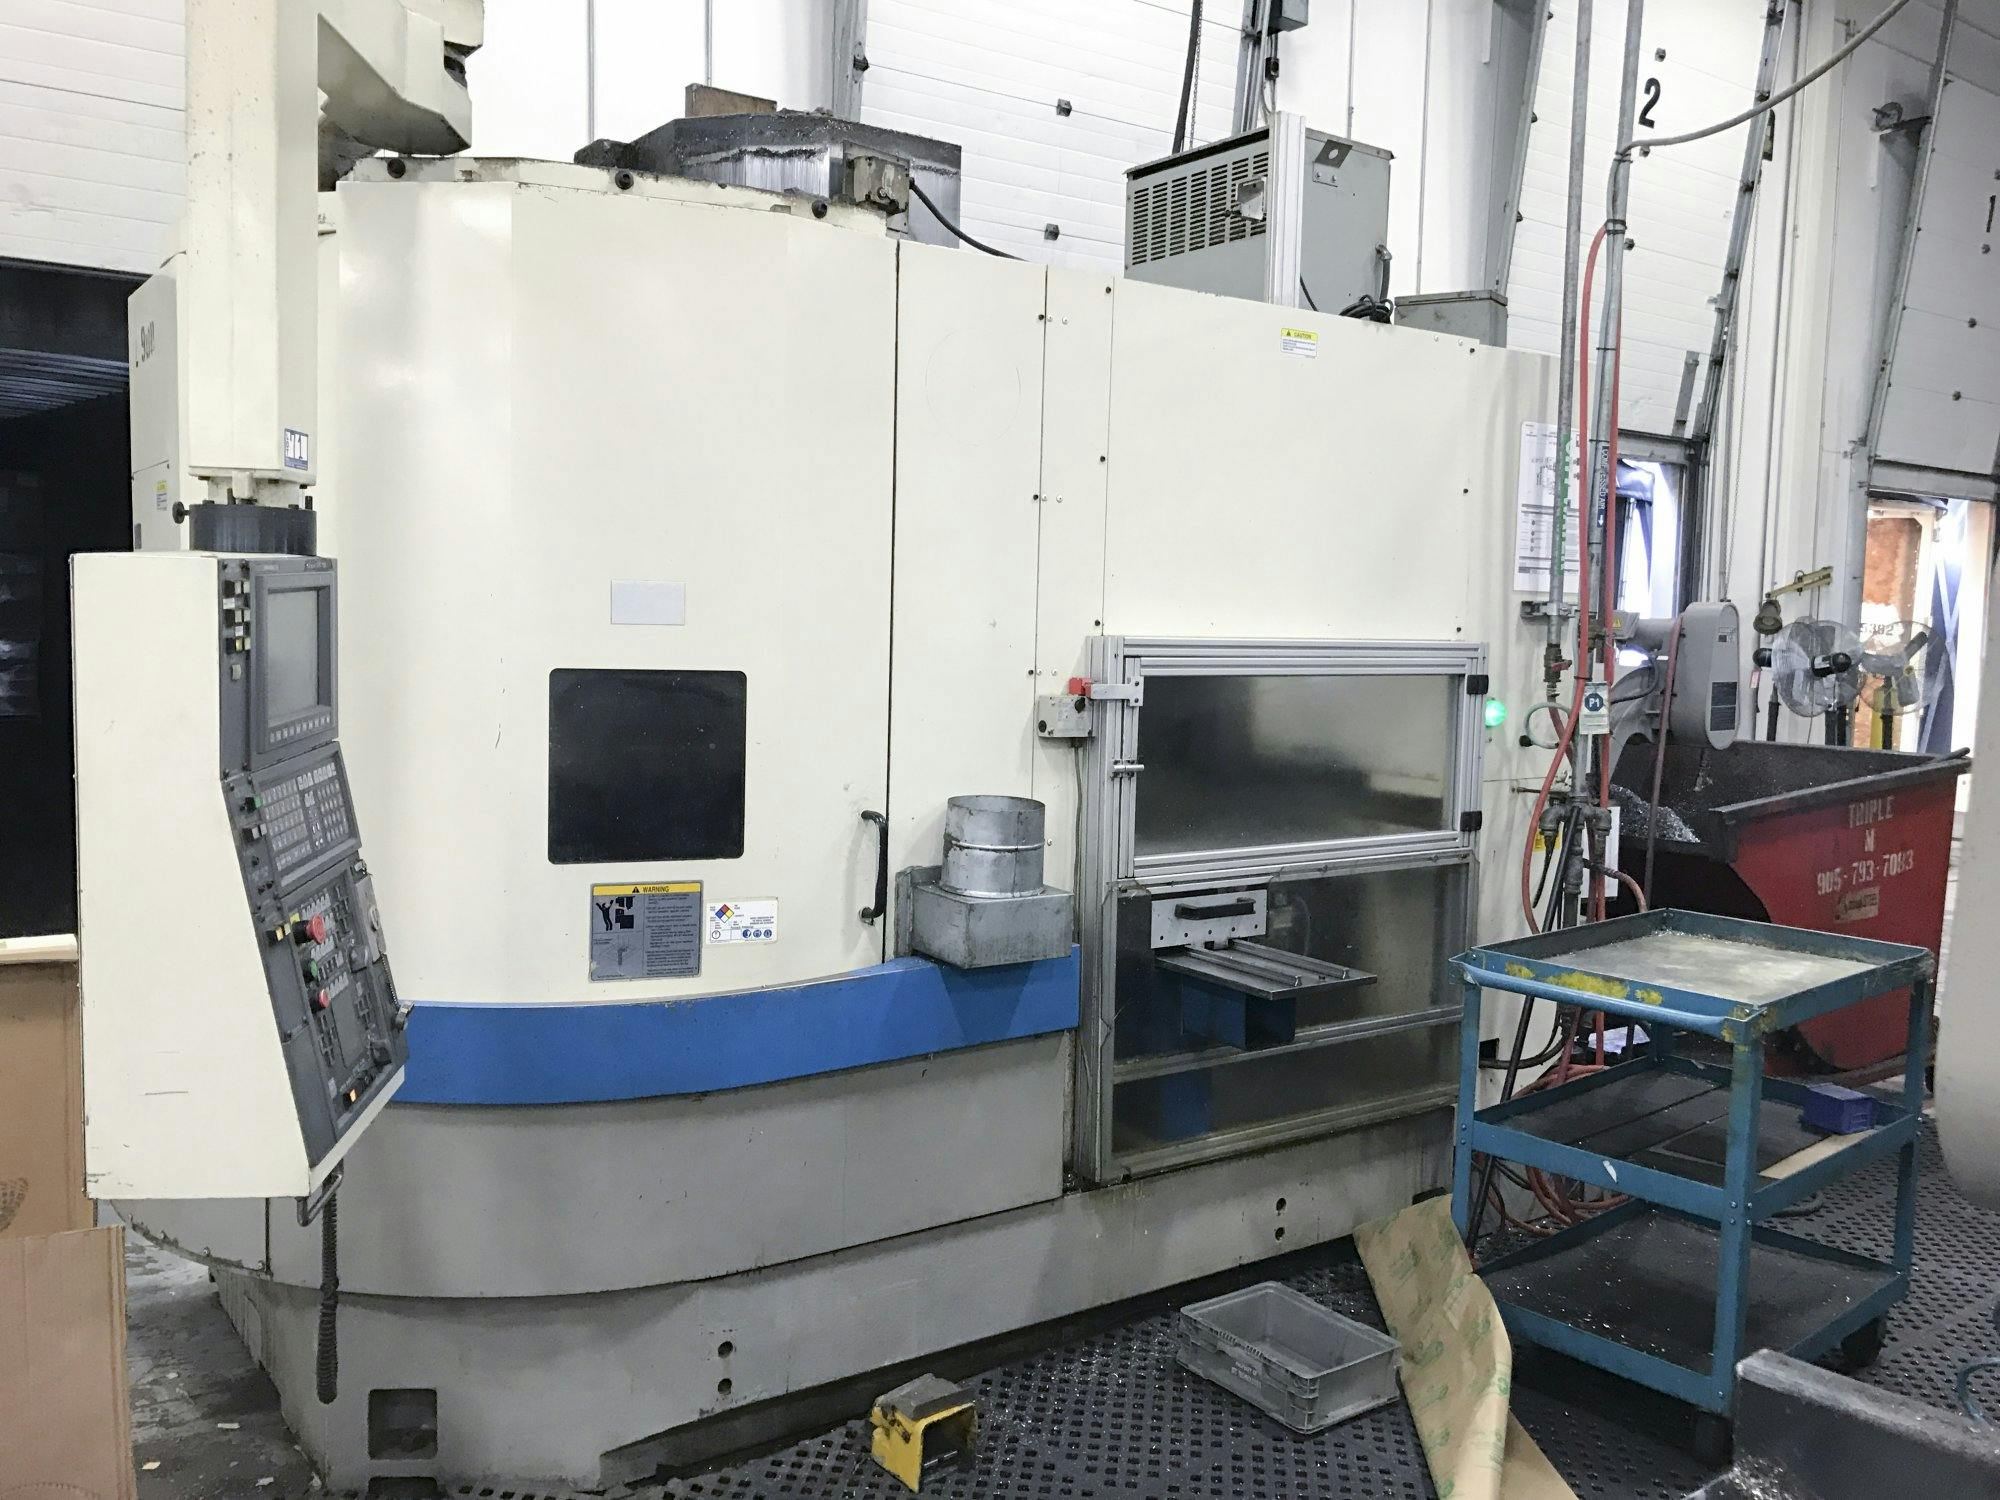 Left view of Okuma LVT 400 machine